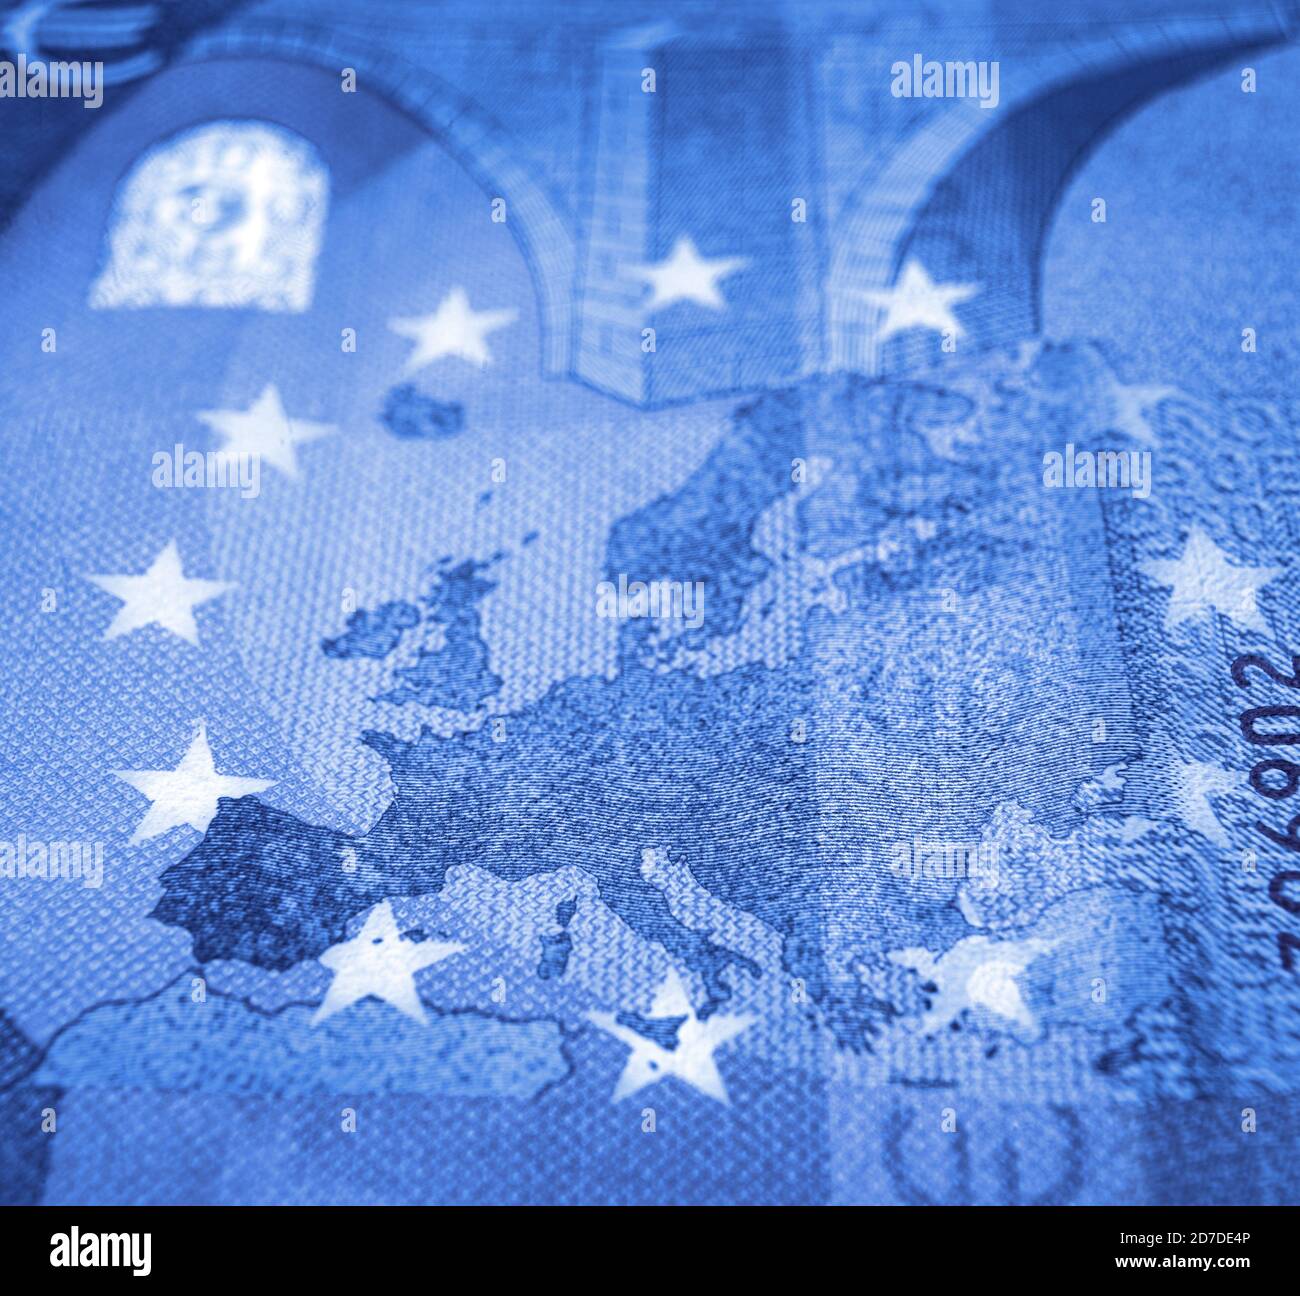 Flacher Fokus gegenüber Euro-Banknoten, der sich auf die Europakarte konzentriert Blauton Stockfoto